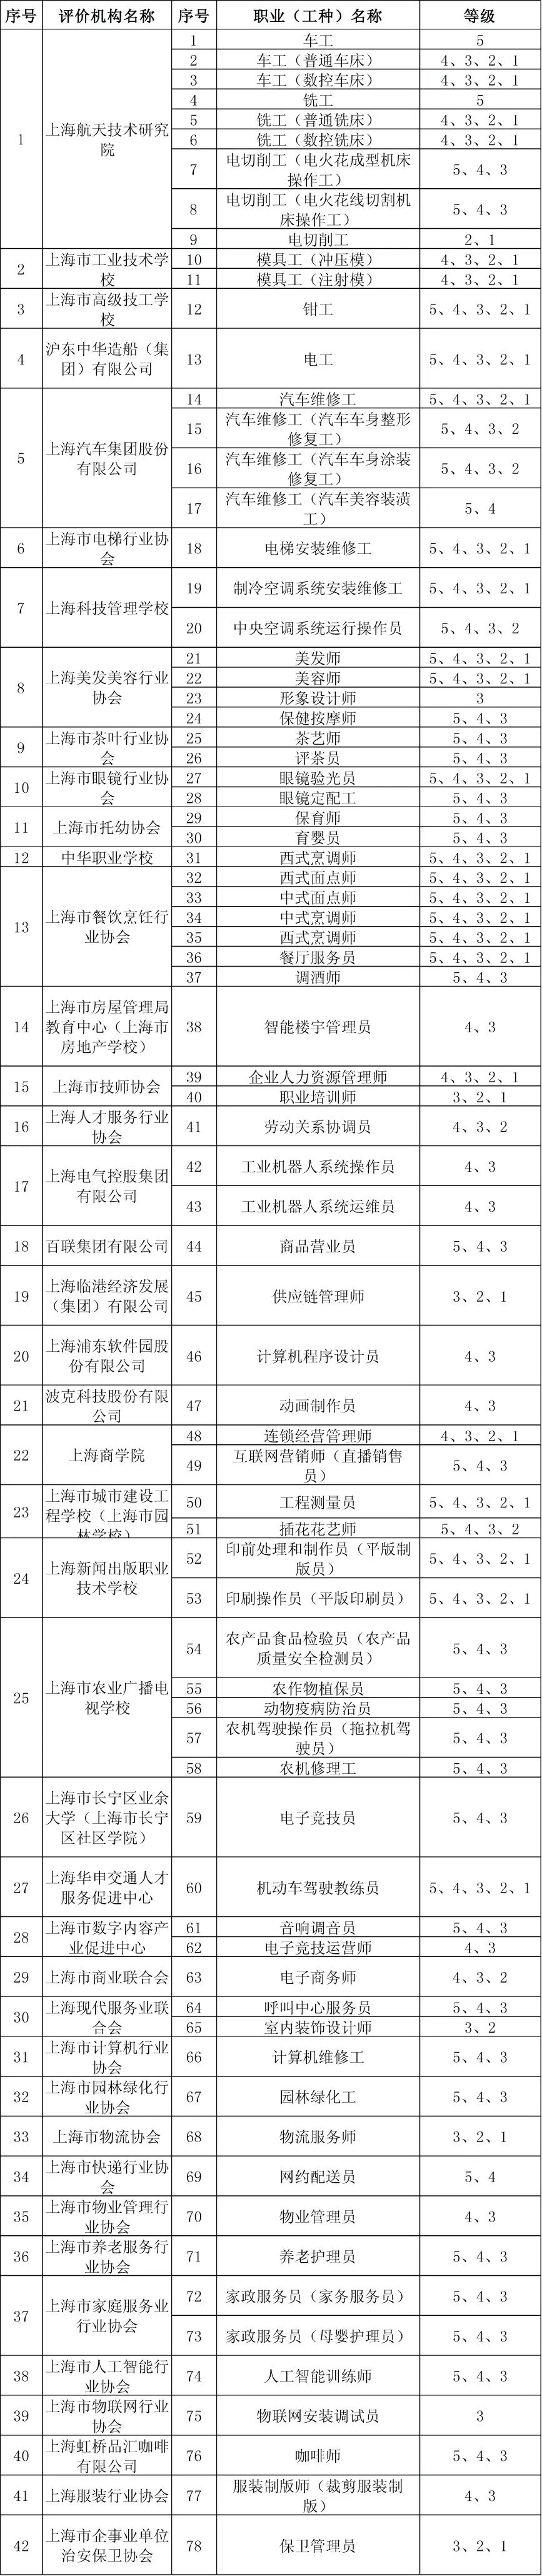 万博ManBetX首页上海市发布社会化职业技能评价目录和查询指南(图1)